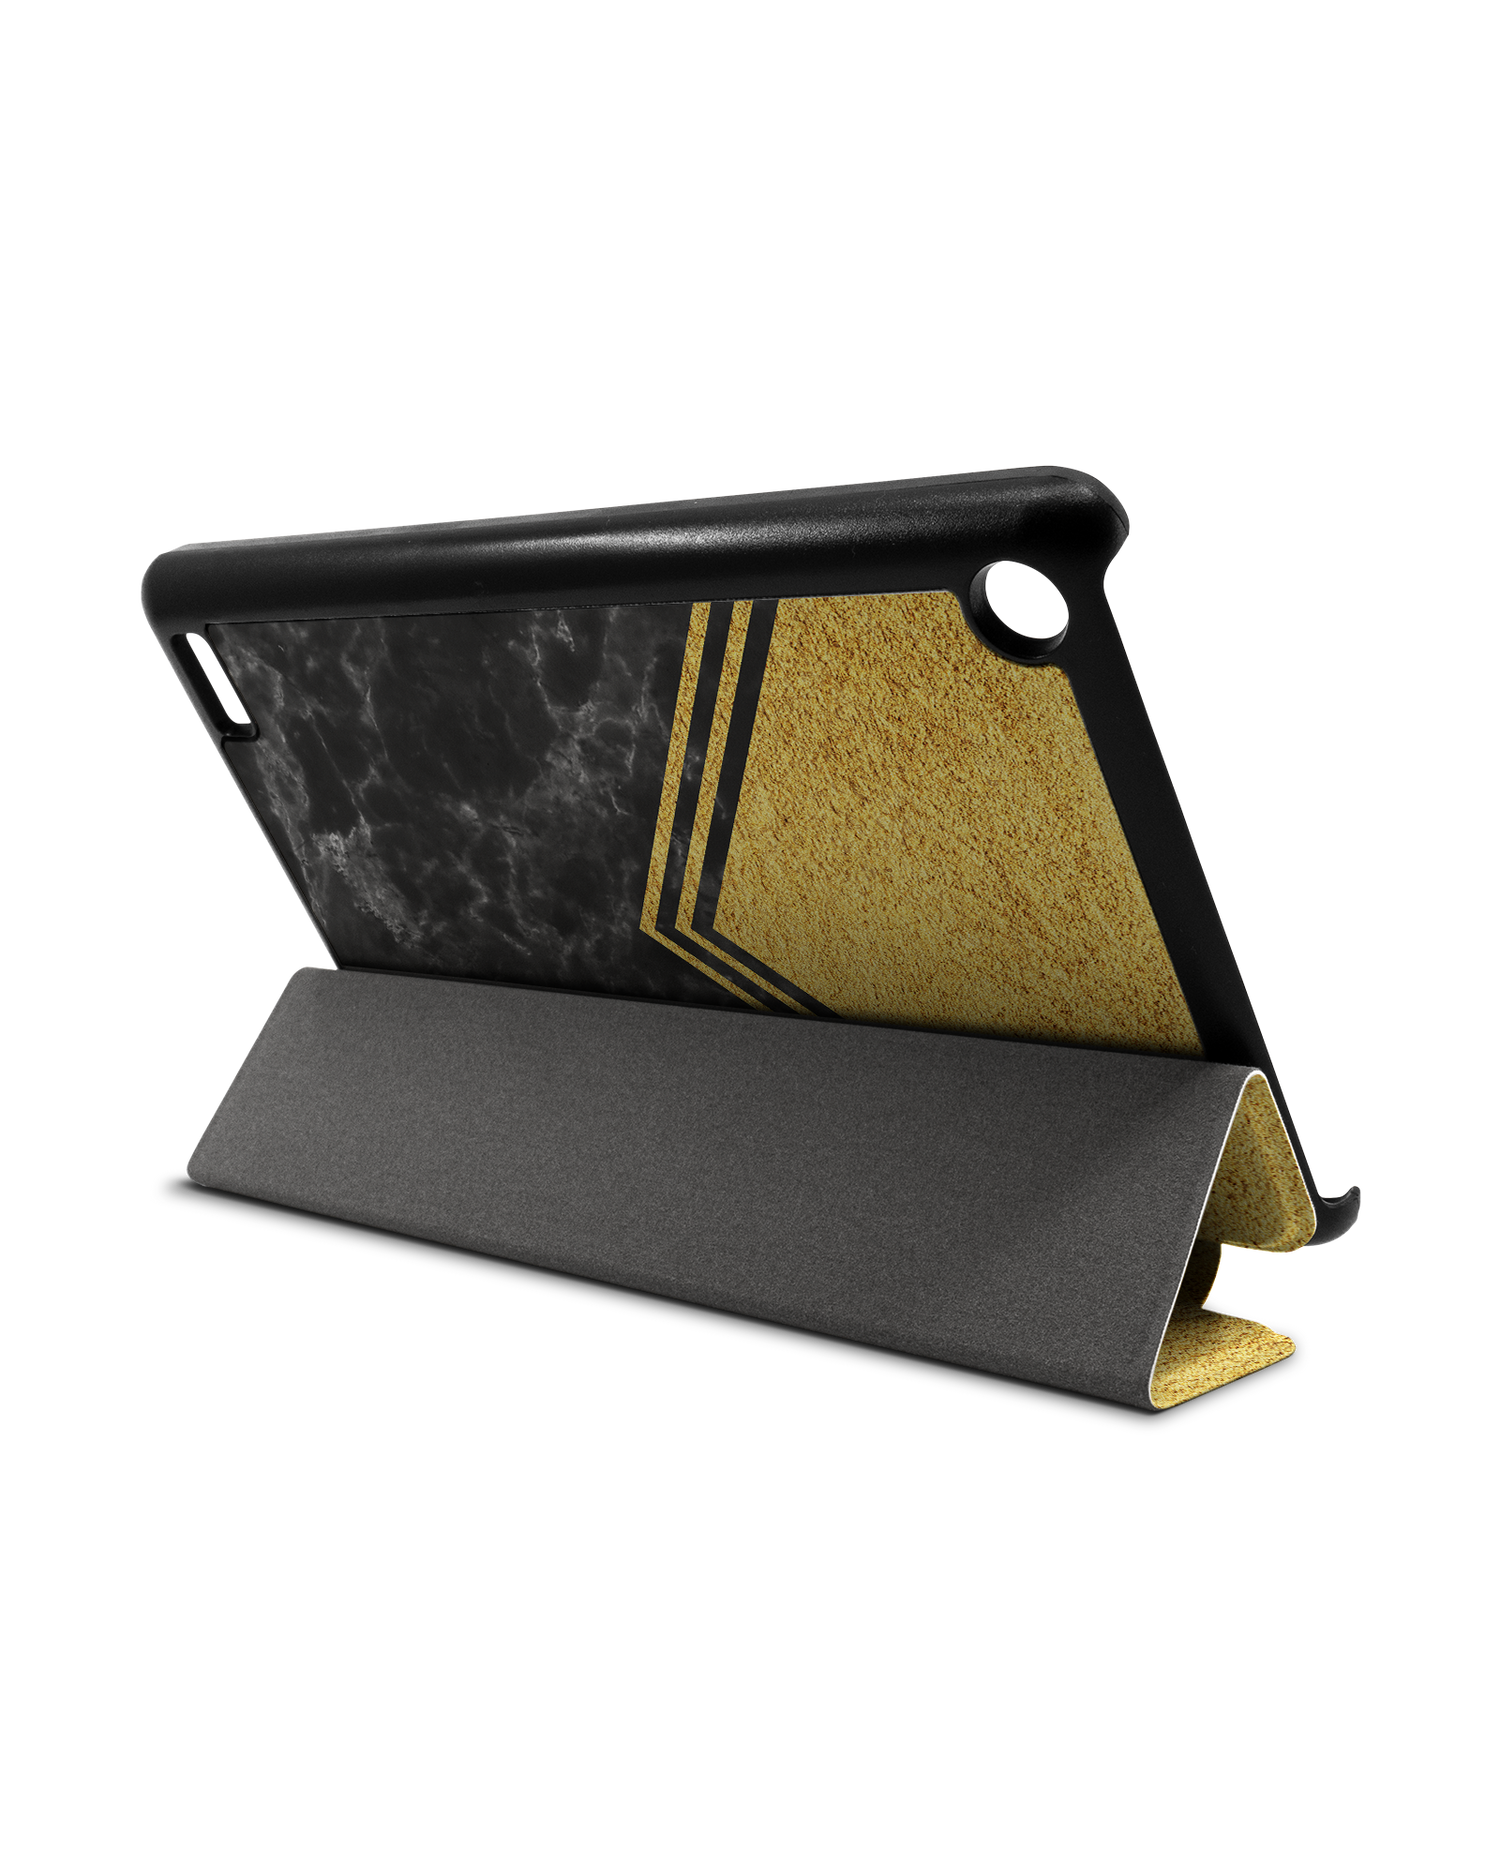 Gold Marble Tablet Smart Case für Amazon Fire 7: Aufgestellt im Querformat